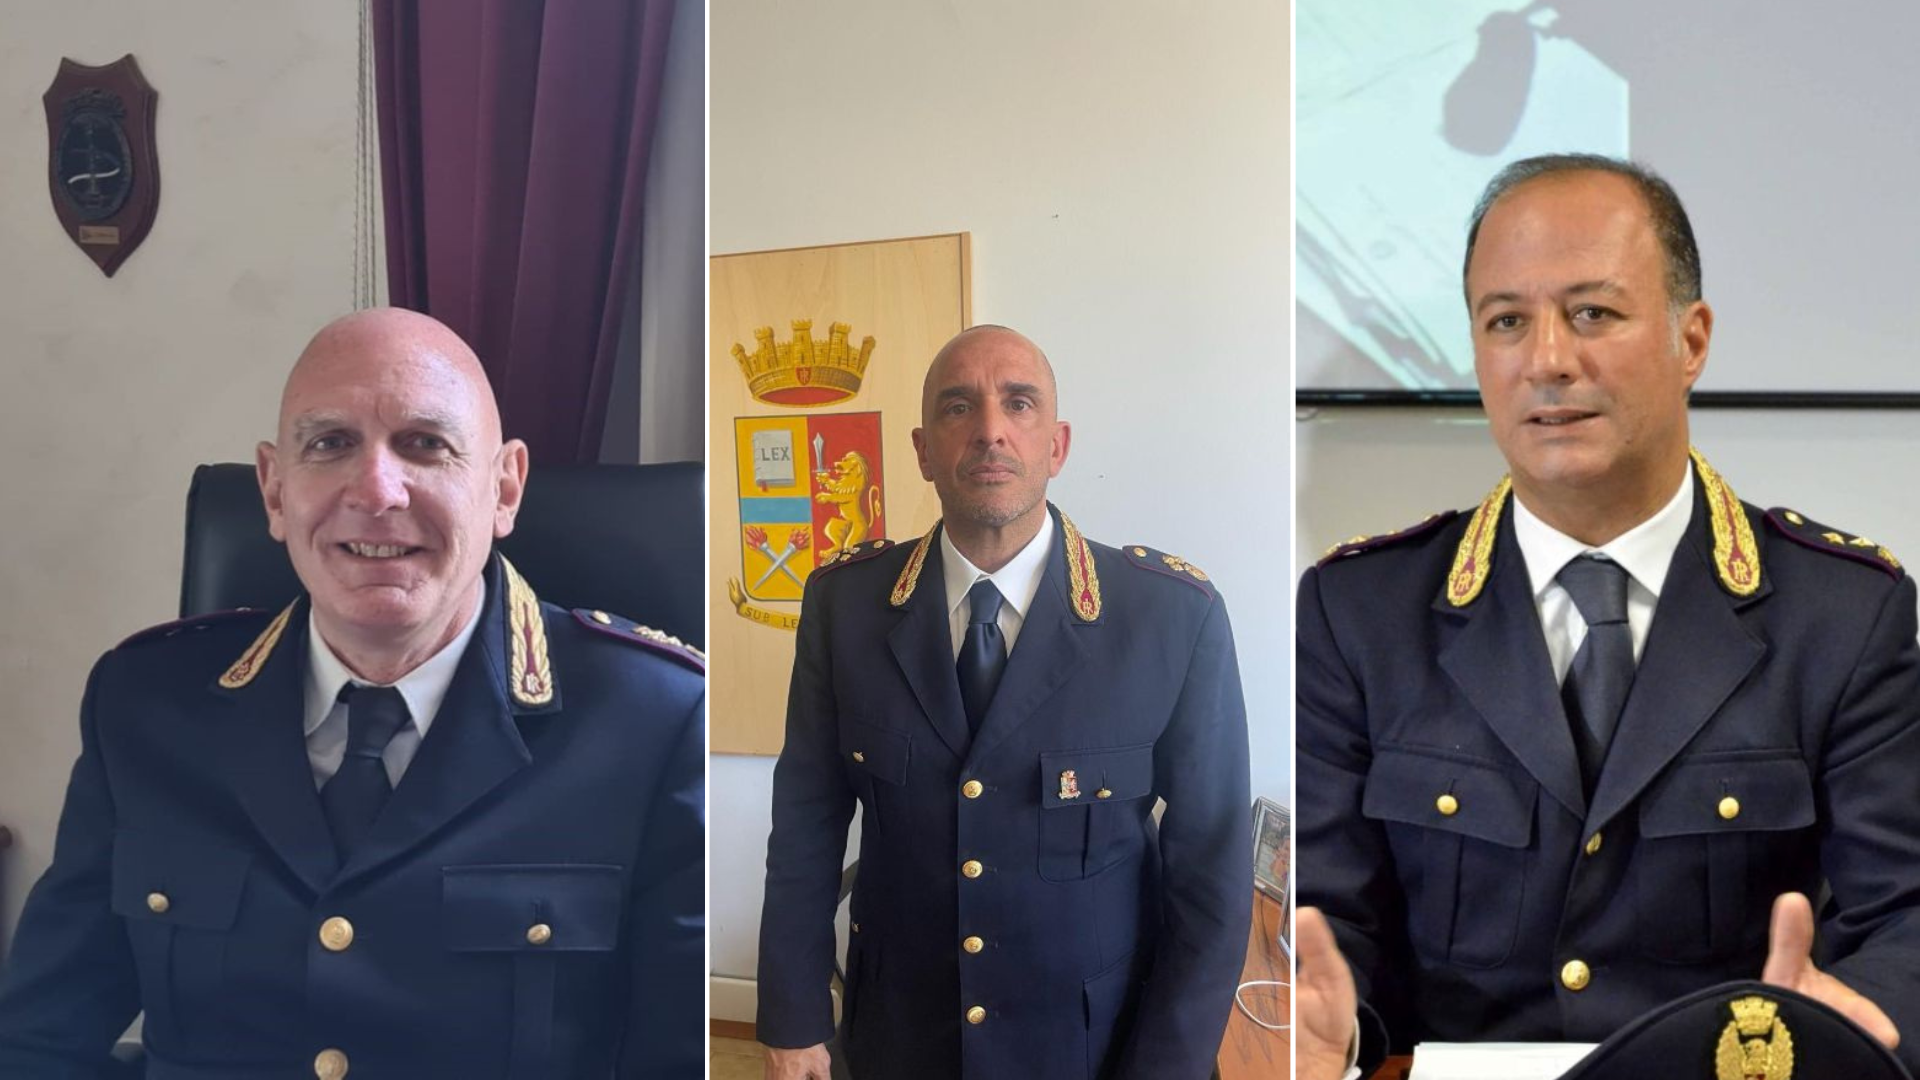 Nuovi incarichi per i dirigenti della polizia di Stato<br>Alla questura di Catania il ritorno di Alessandro Drago